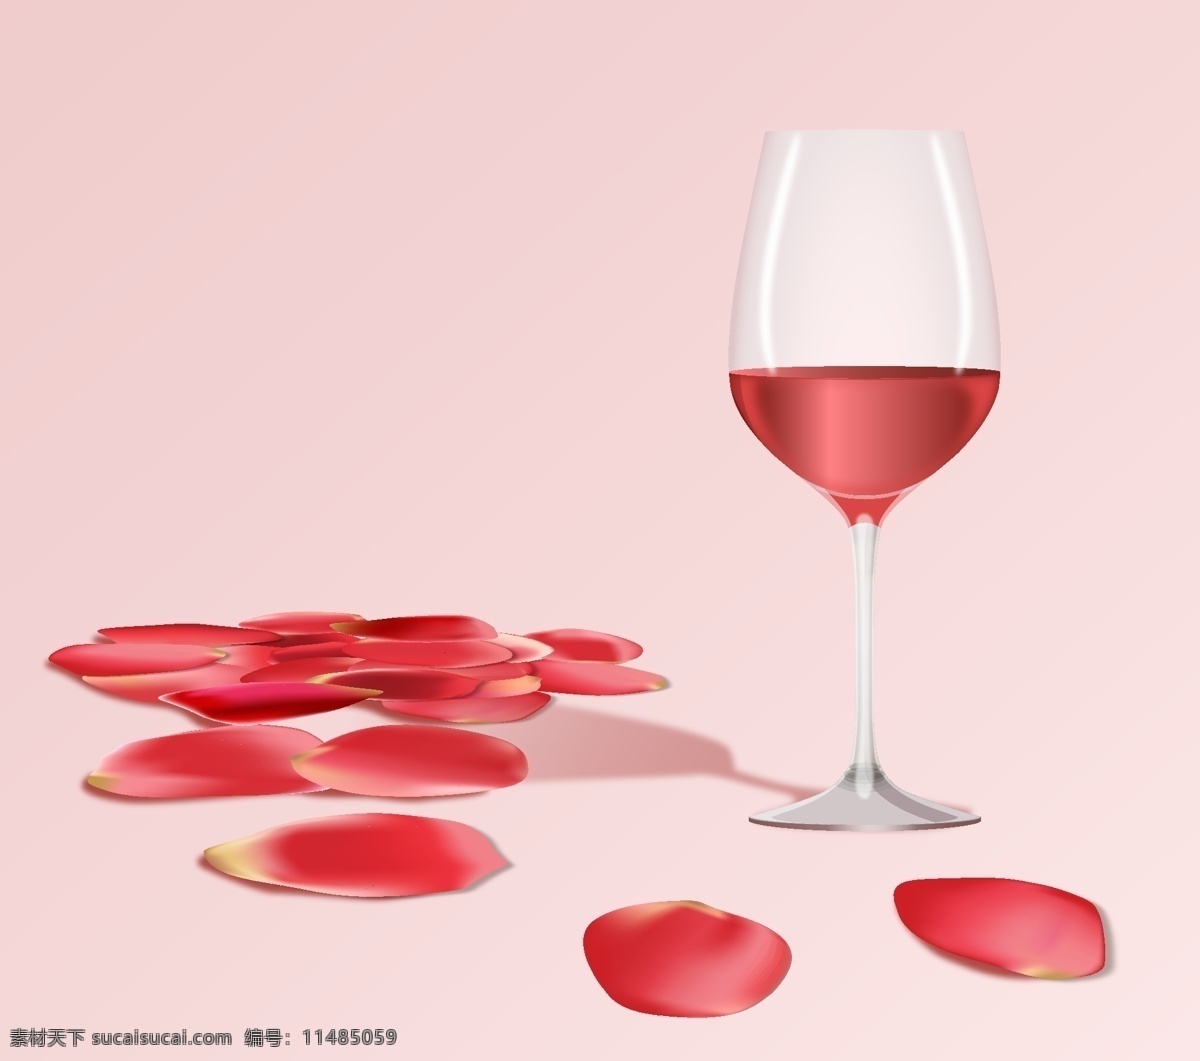 红酒图片 高脚杯 葡萄酒 红酒 干红 红葡萄酒 桃红葡萄酒 矢量葡萄酒 矢量酒杯 节日素材